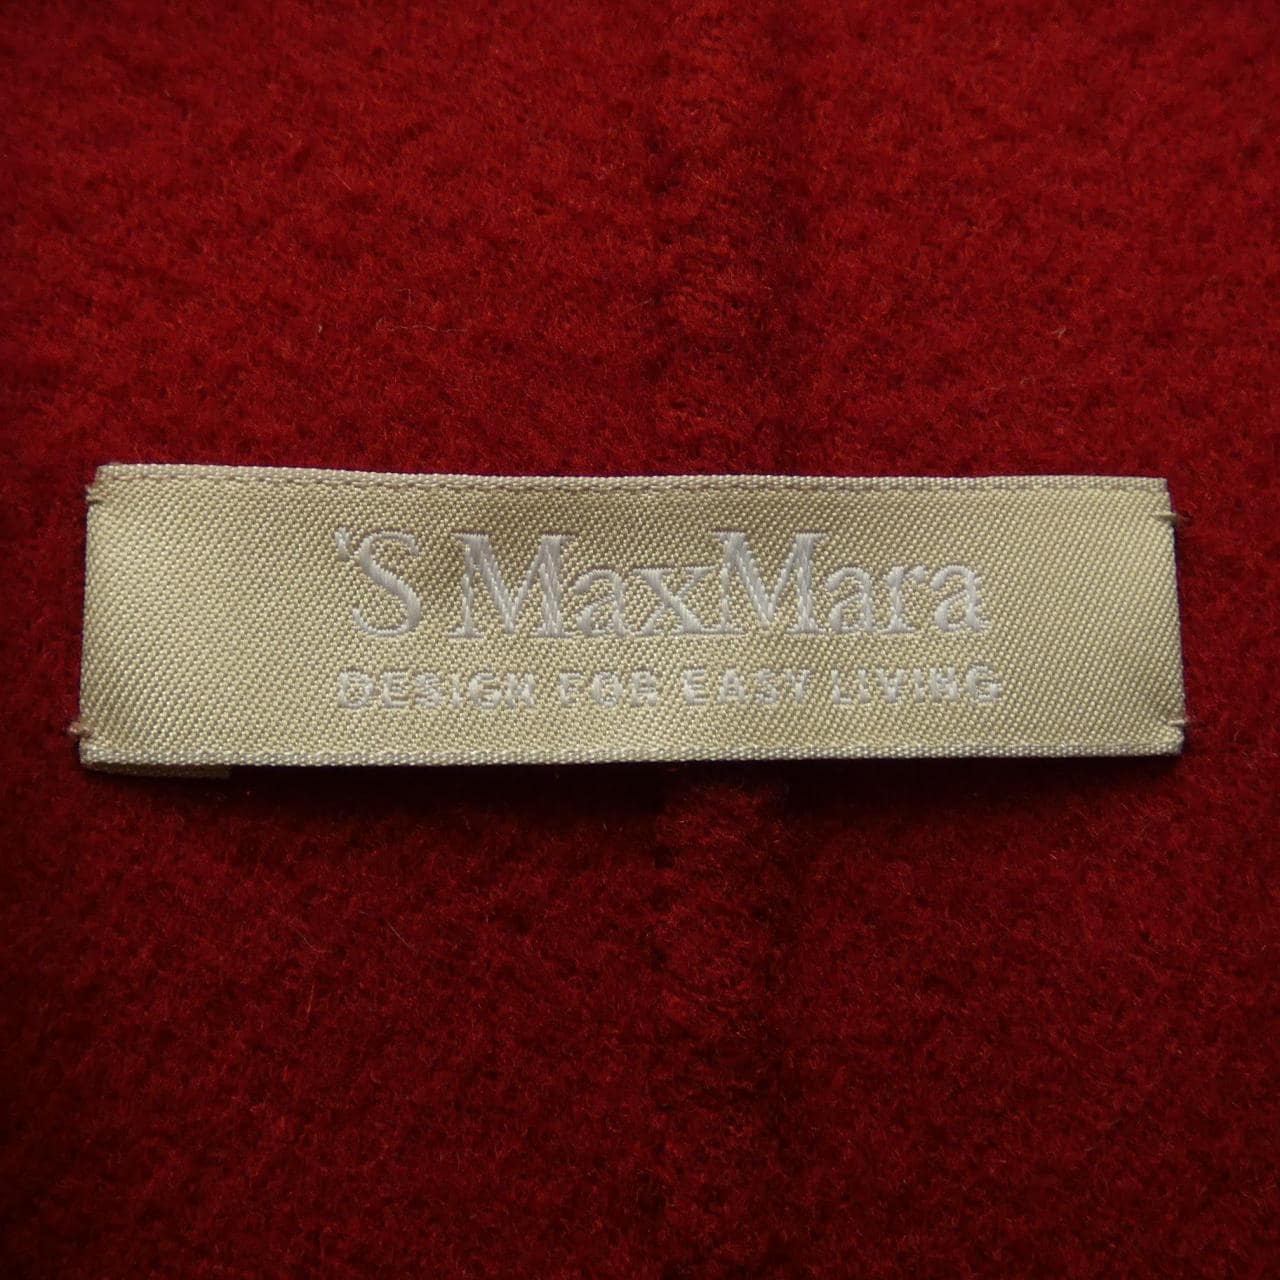 エスマックスマーラ 'S Max Mara コート